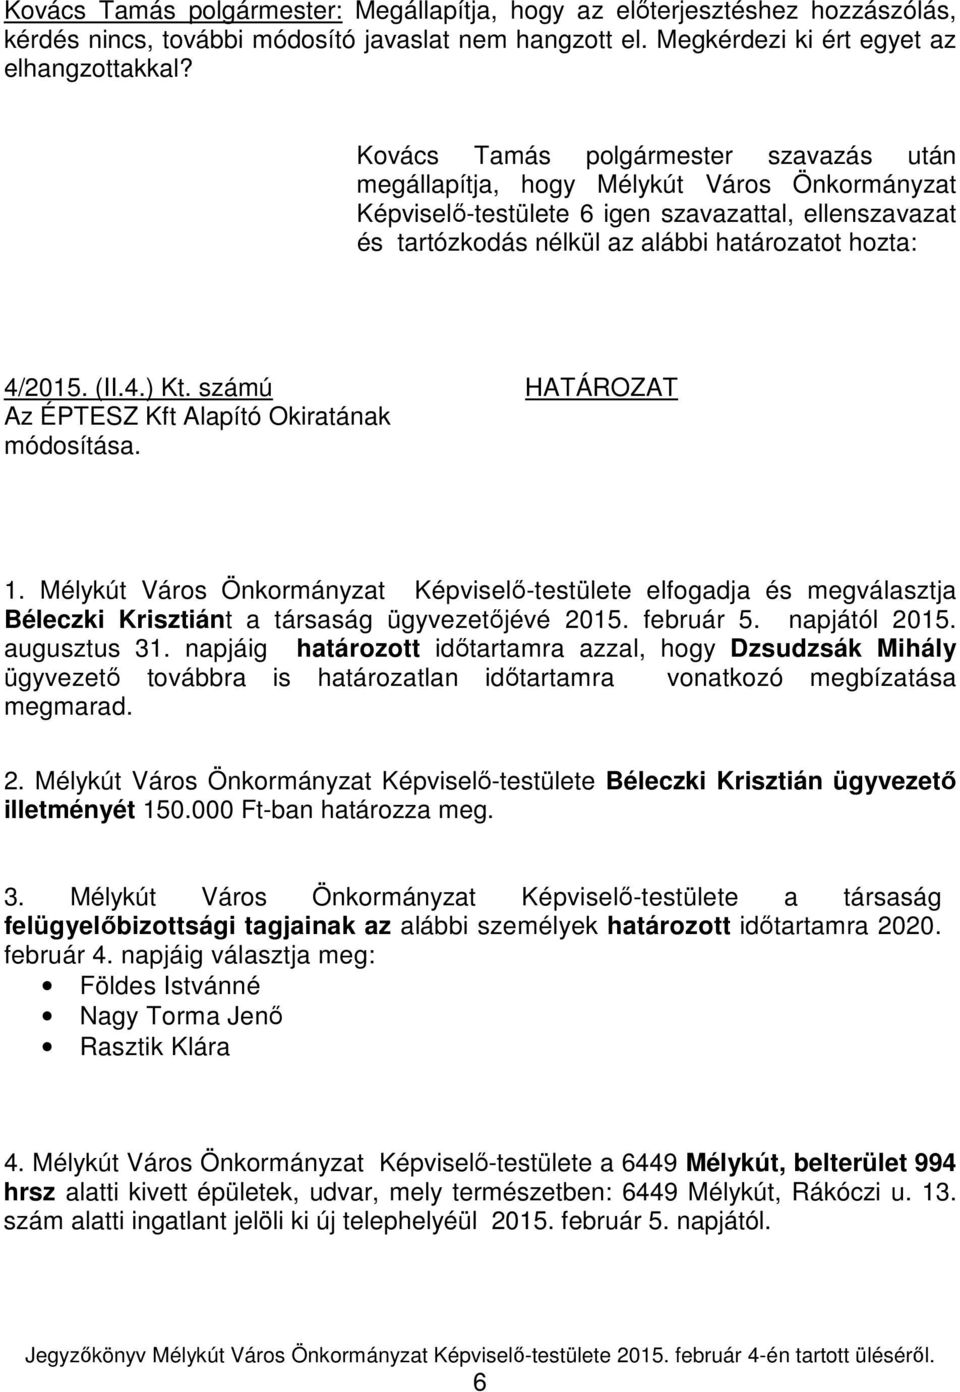 (II.4.) Kt. számú HATÁROZAT Az ÉPTESZ Kft Alapító Okiratának módosítása. 1. Mélykút Város Önkormányzat Képviselő-testülete elfogadja és megválasztja Béleczki Krisztiánt a társaság ügyvezetőjévé 2015.